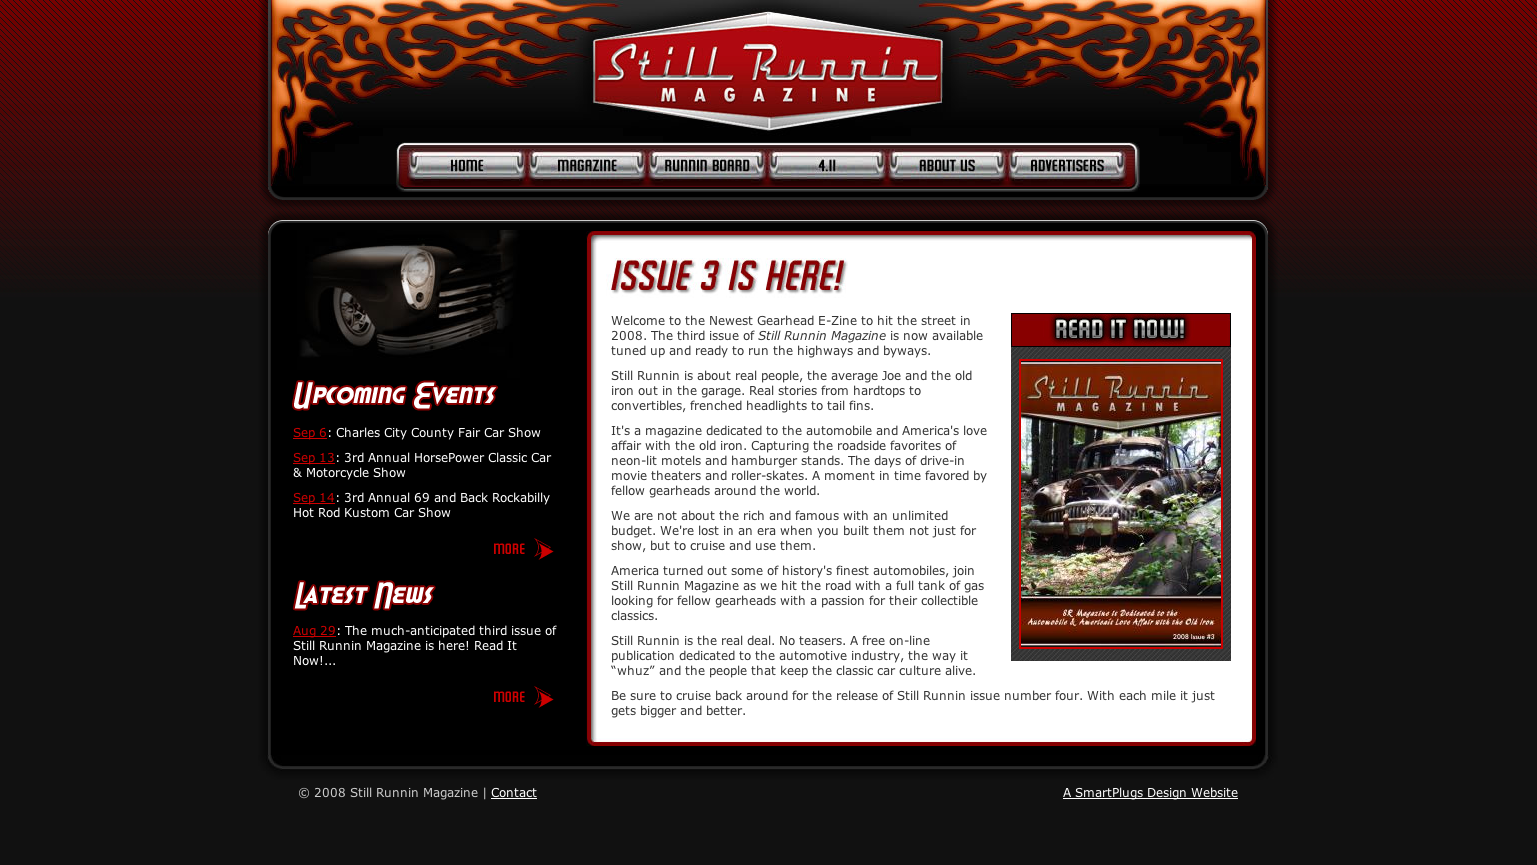 Still Runnin Magazine (BLU42 Media)